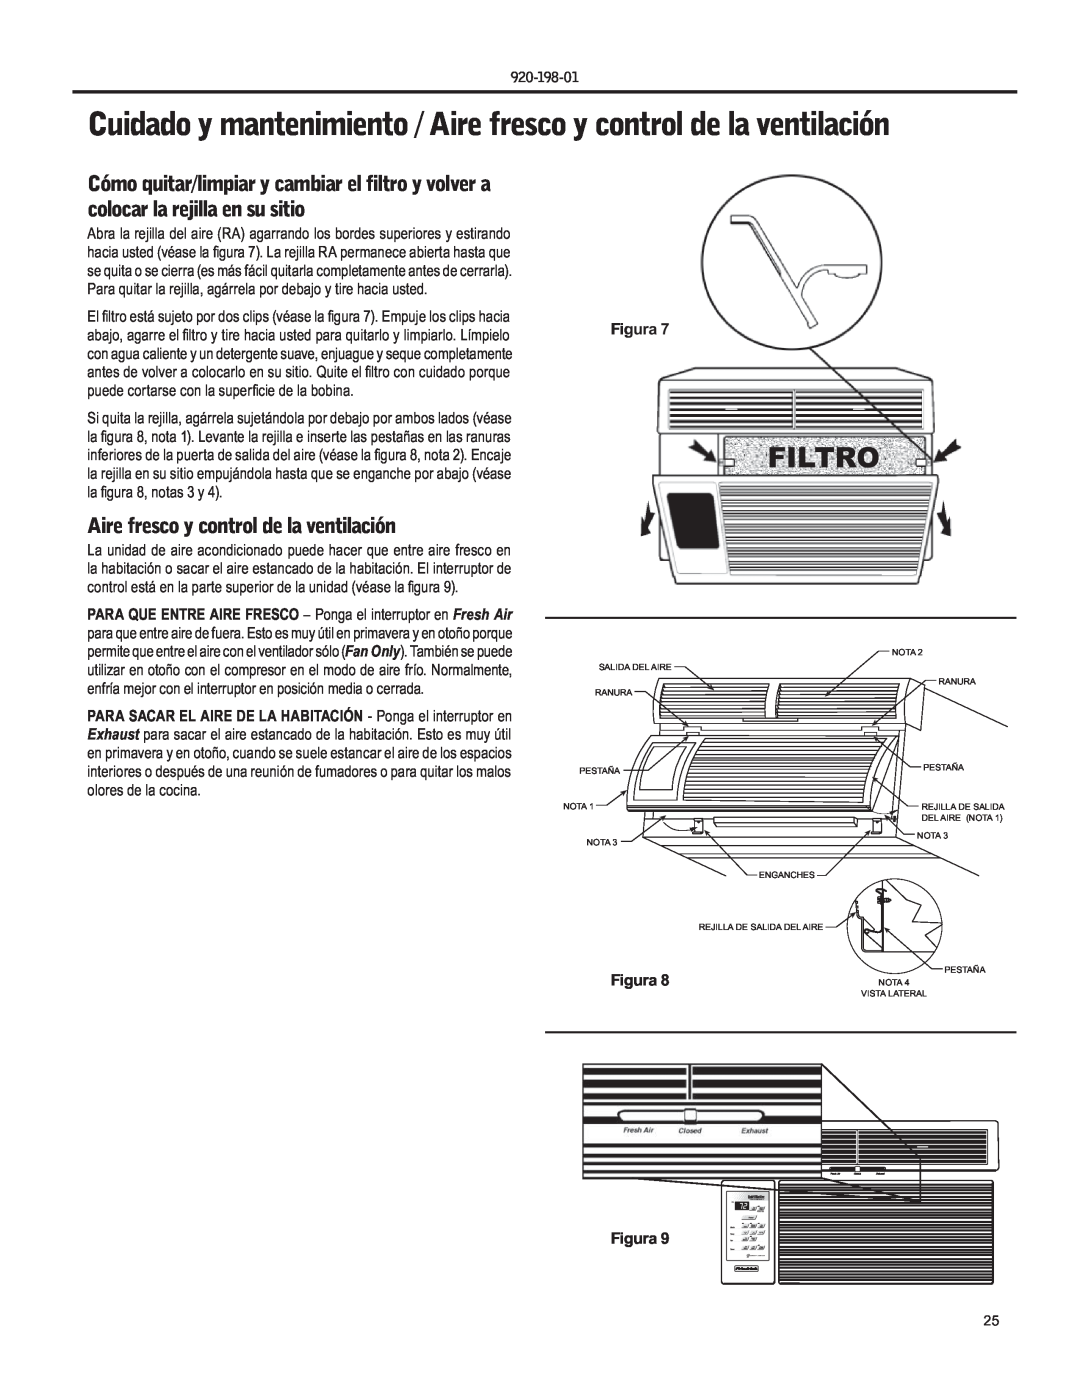 Friedrich YS09 operation manual Filtro, Aire fresco y control de la ventilación, Figura 